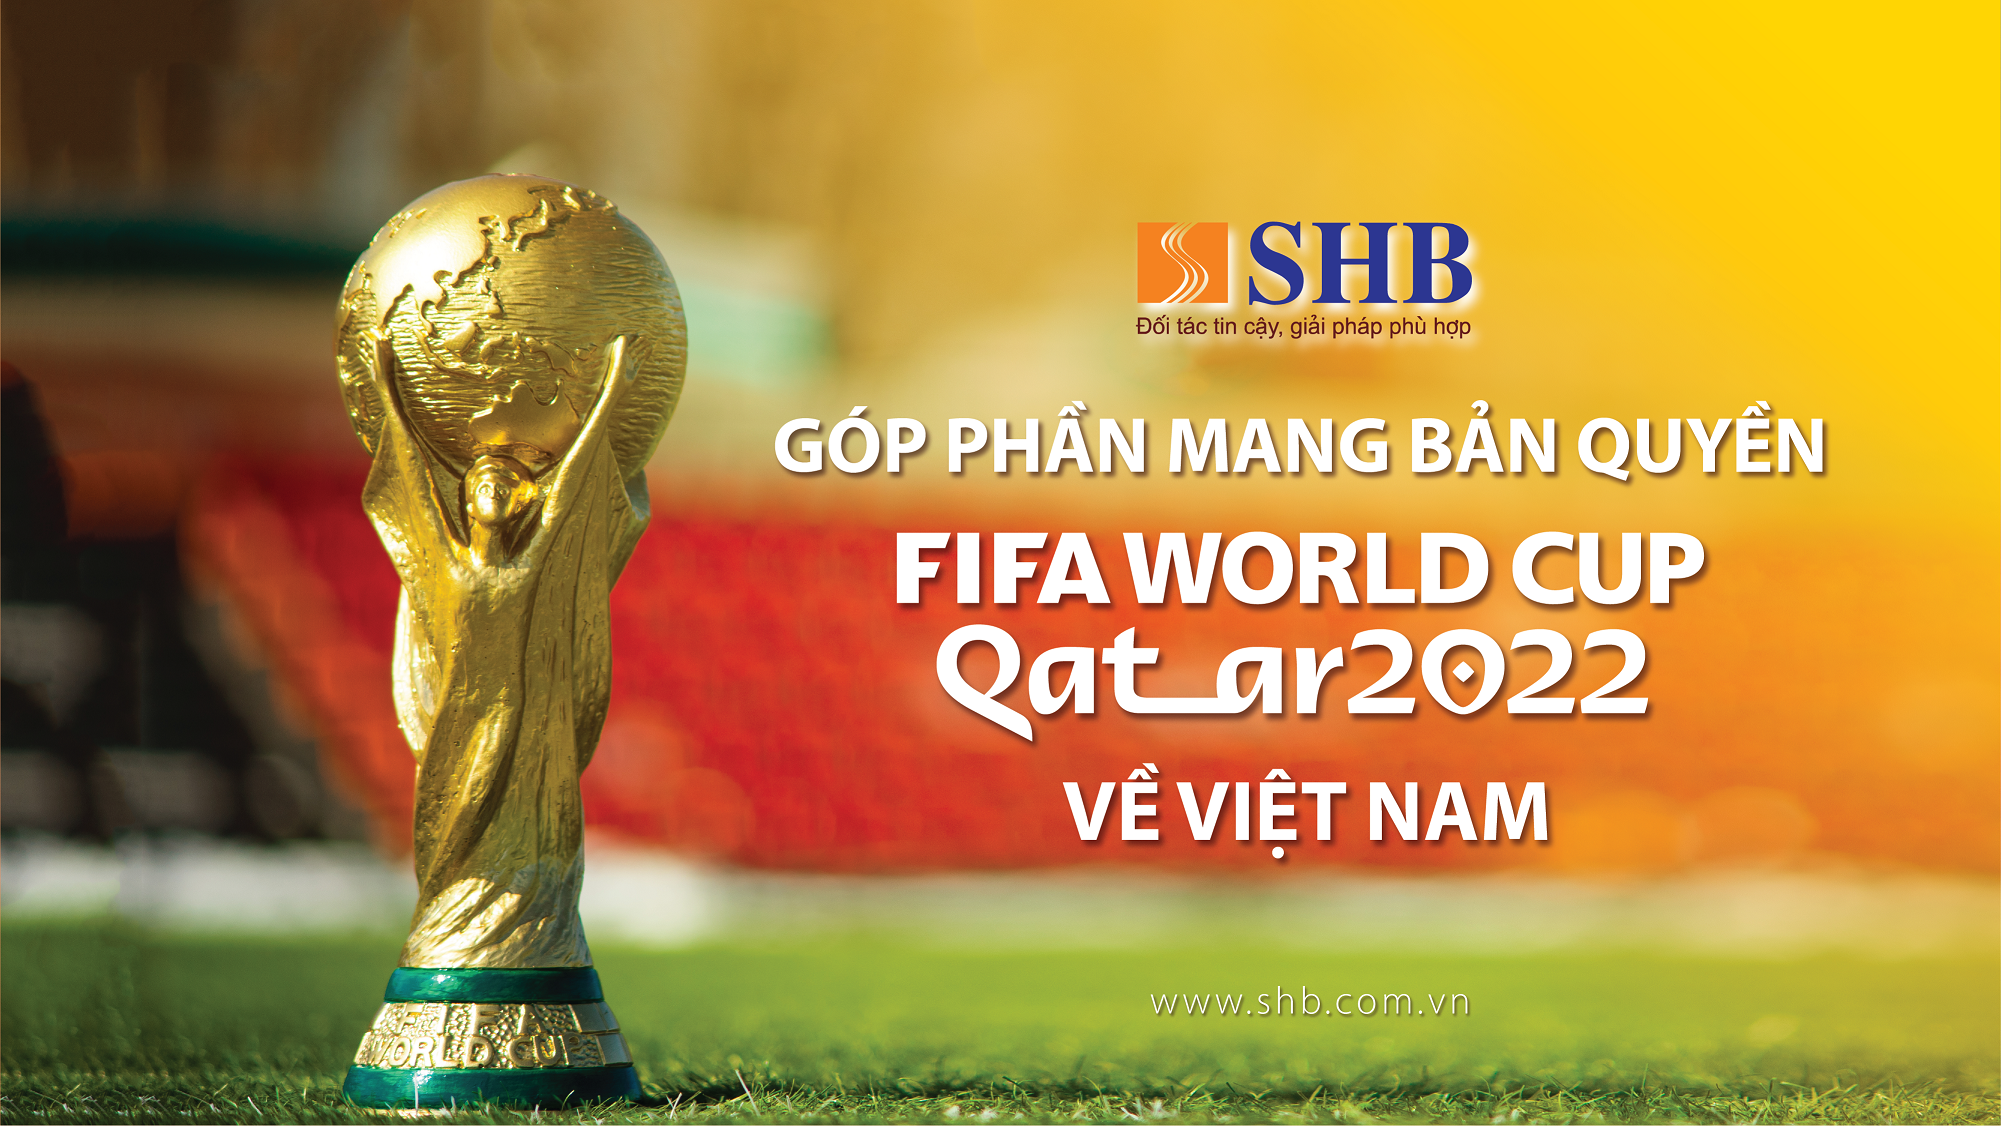 SHB đồng hành cùng VTV sở hữu bản quyền phát sóng FIFA World Cup 2022TM